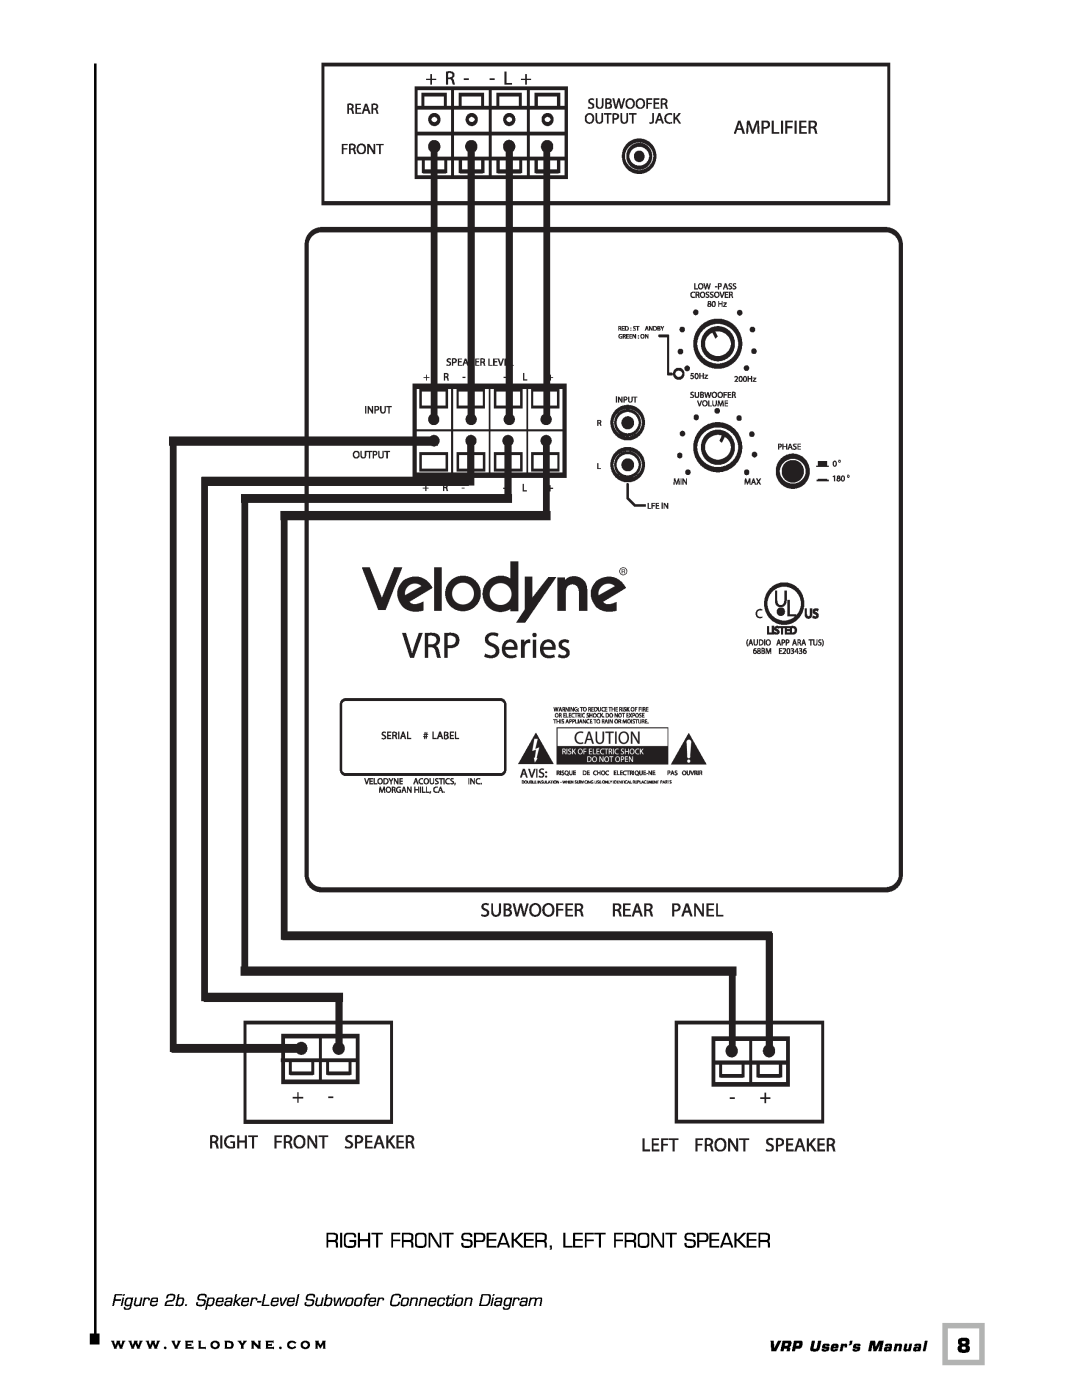 Velodyne Acoustics VRP Series user manual Right Front Speaker, Left Front Speaker, w w w . v e l o d y n e . c o m 